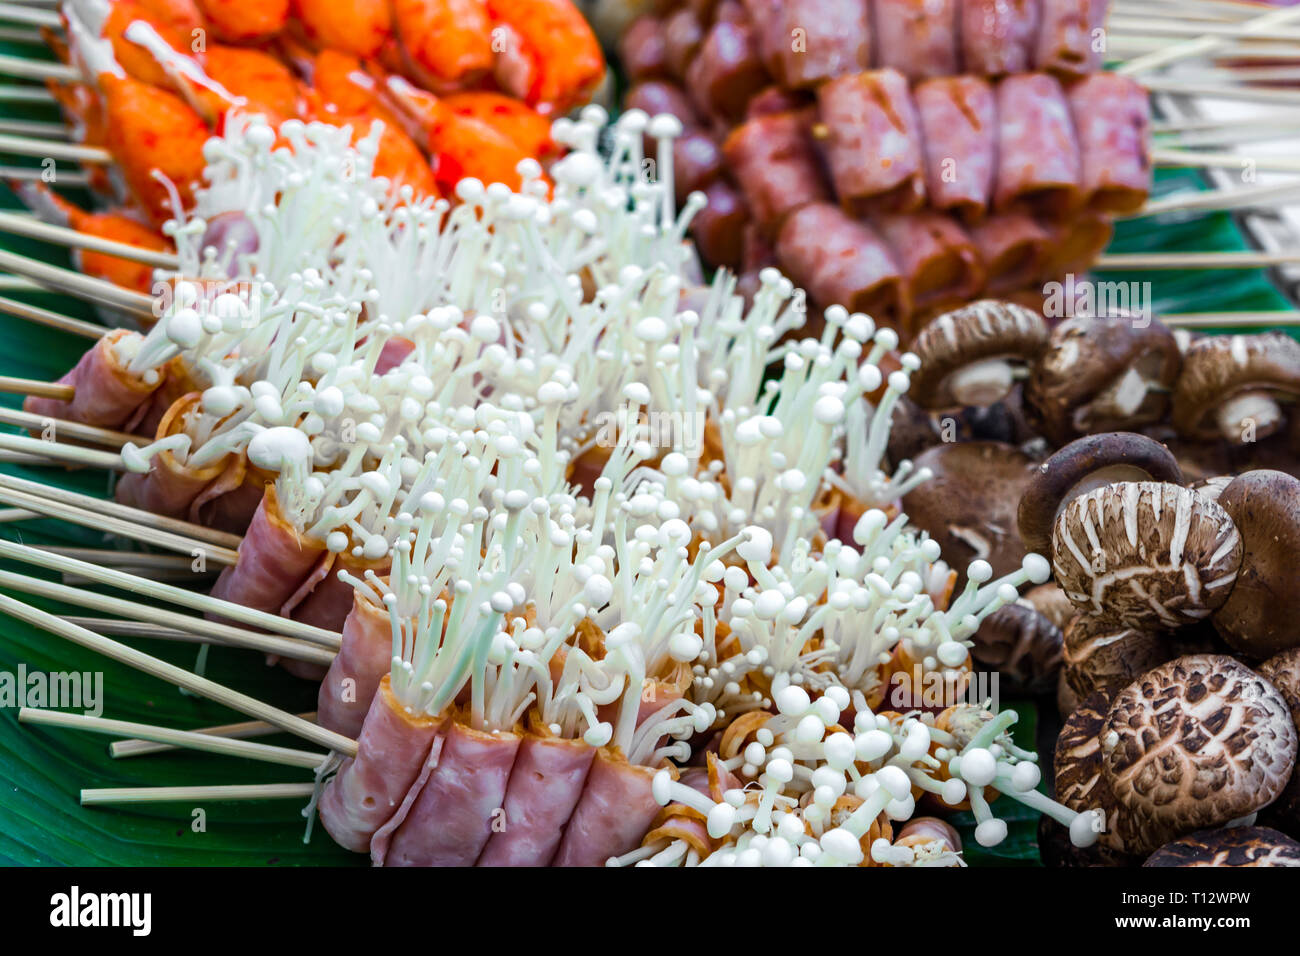 Speck umwickelt Pilze, eine Straße, Lebensmittel in den lokalen Markt in Thailand, Asien - asiatische Lebensmittel köstliche Schmankerln Stockfoto